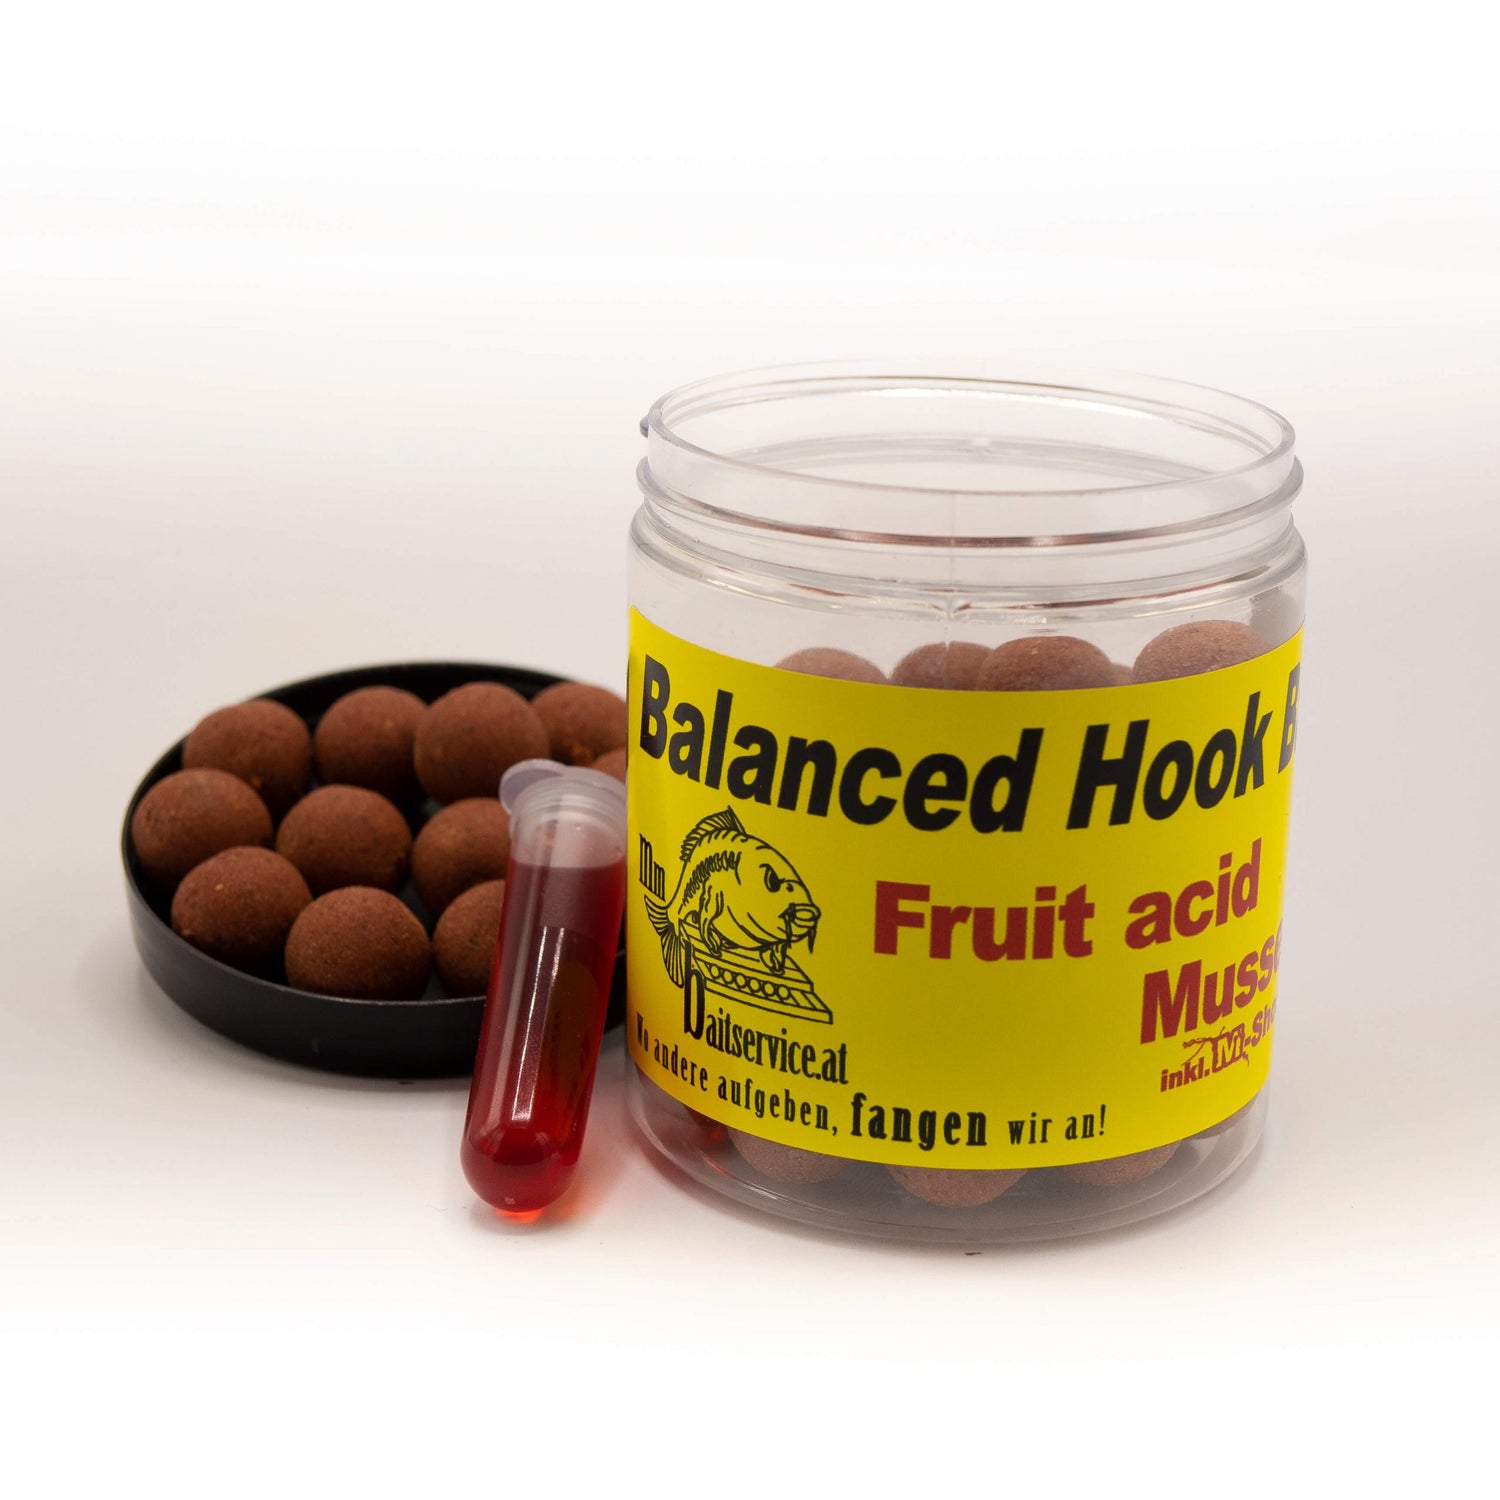 MM Baitservice Balanced Hookbaits Fruit Acid Mussel 12mm